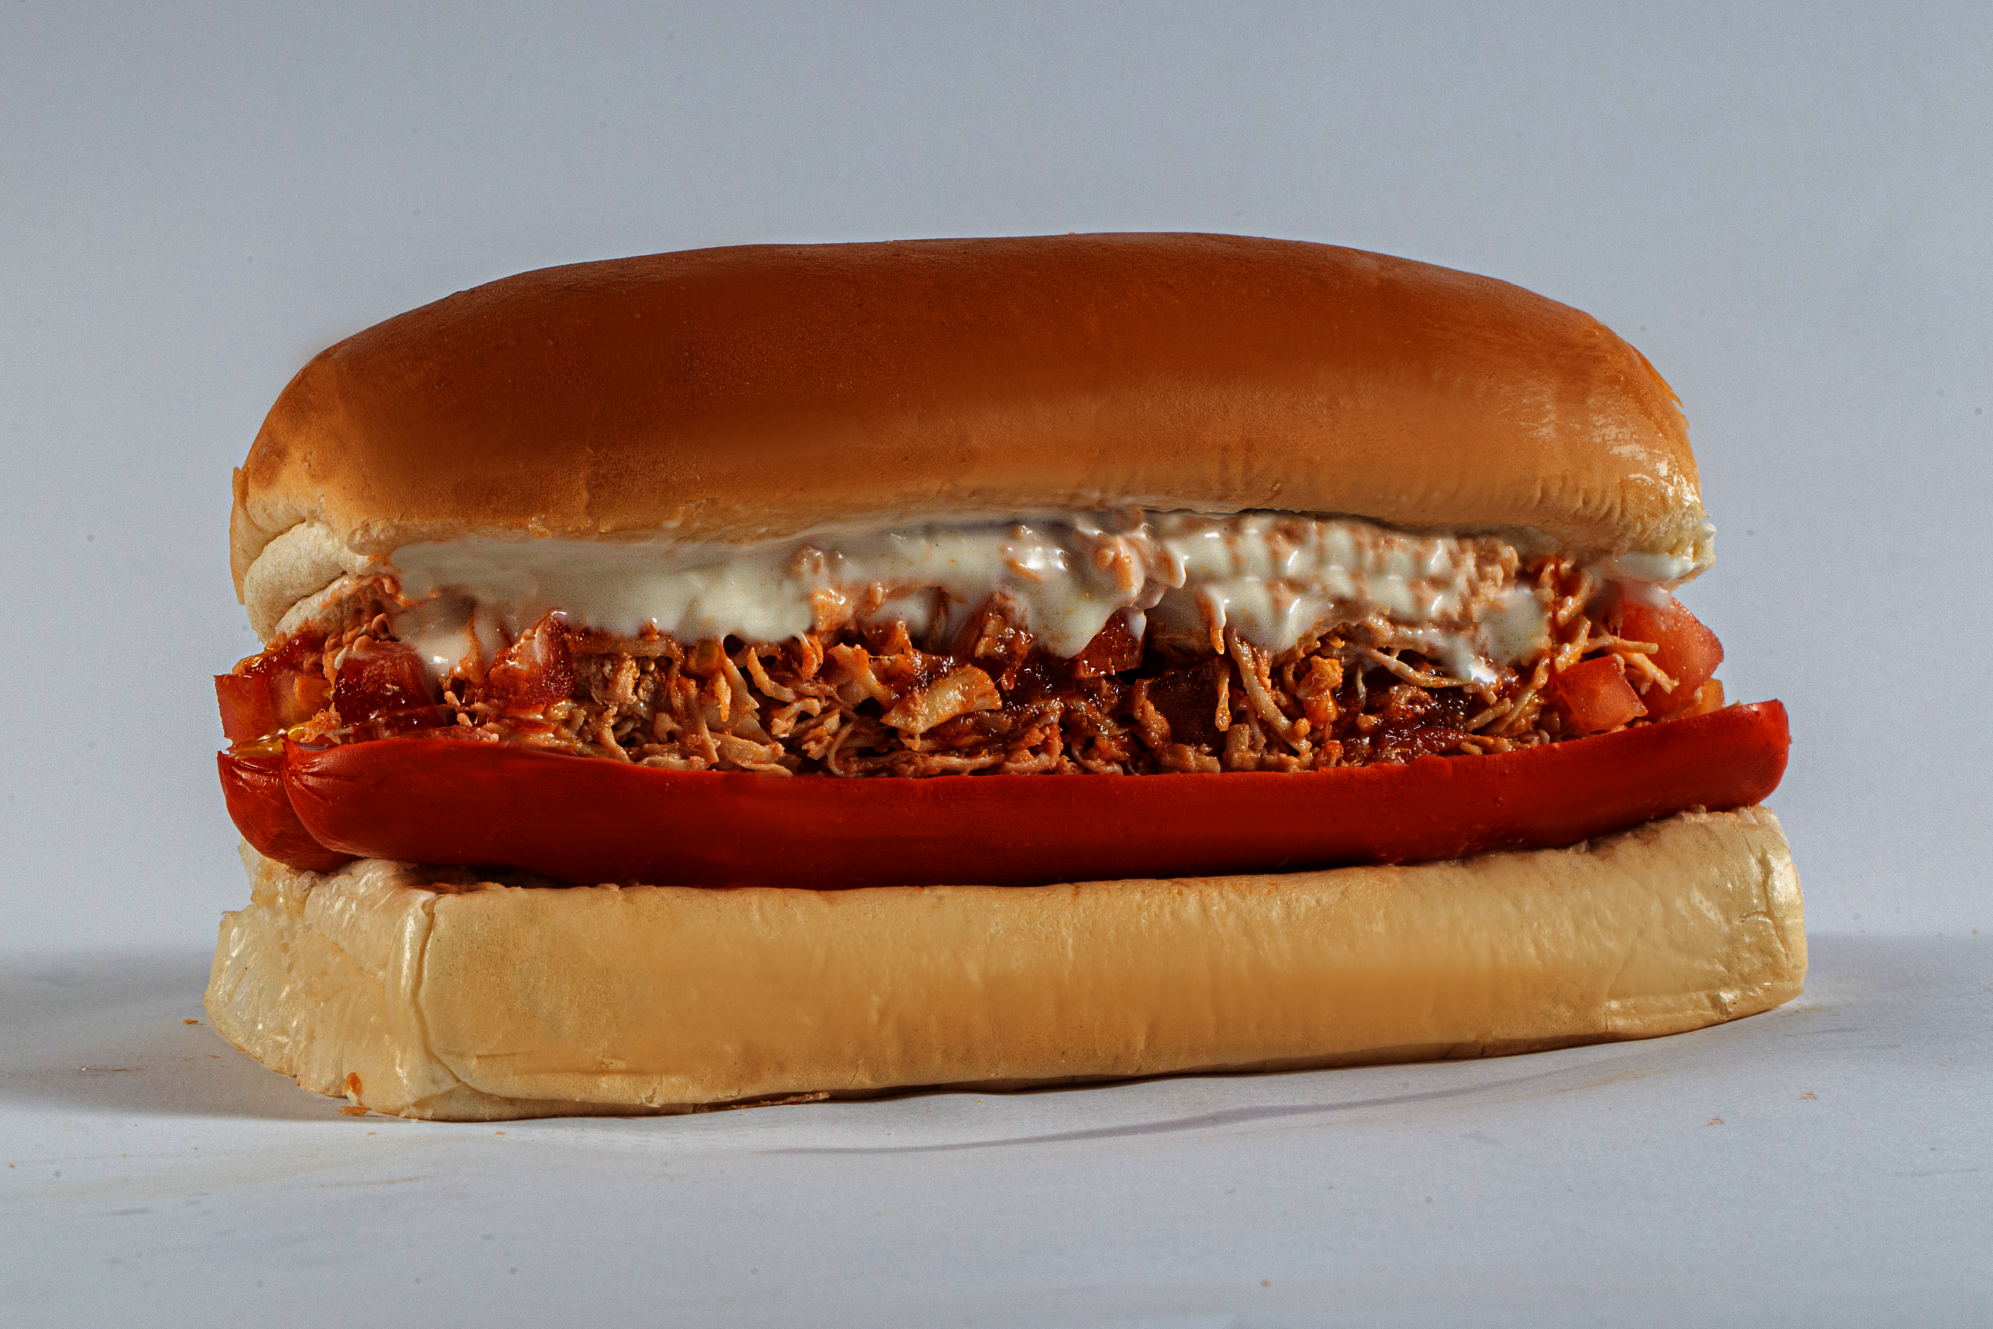 Prensado de frango ou hot dog: qual o melhor tipo de lanche?